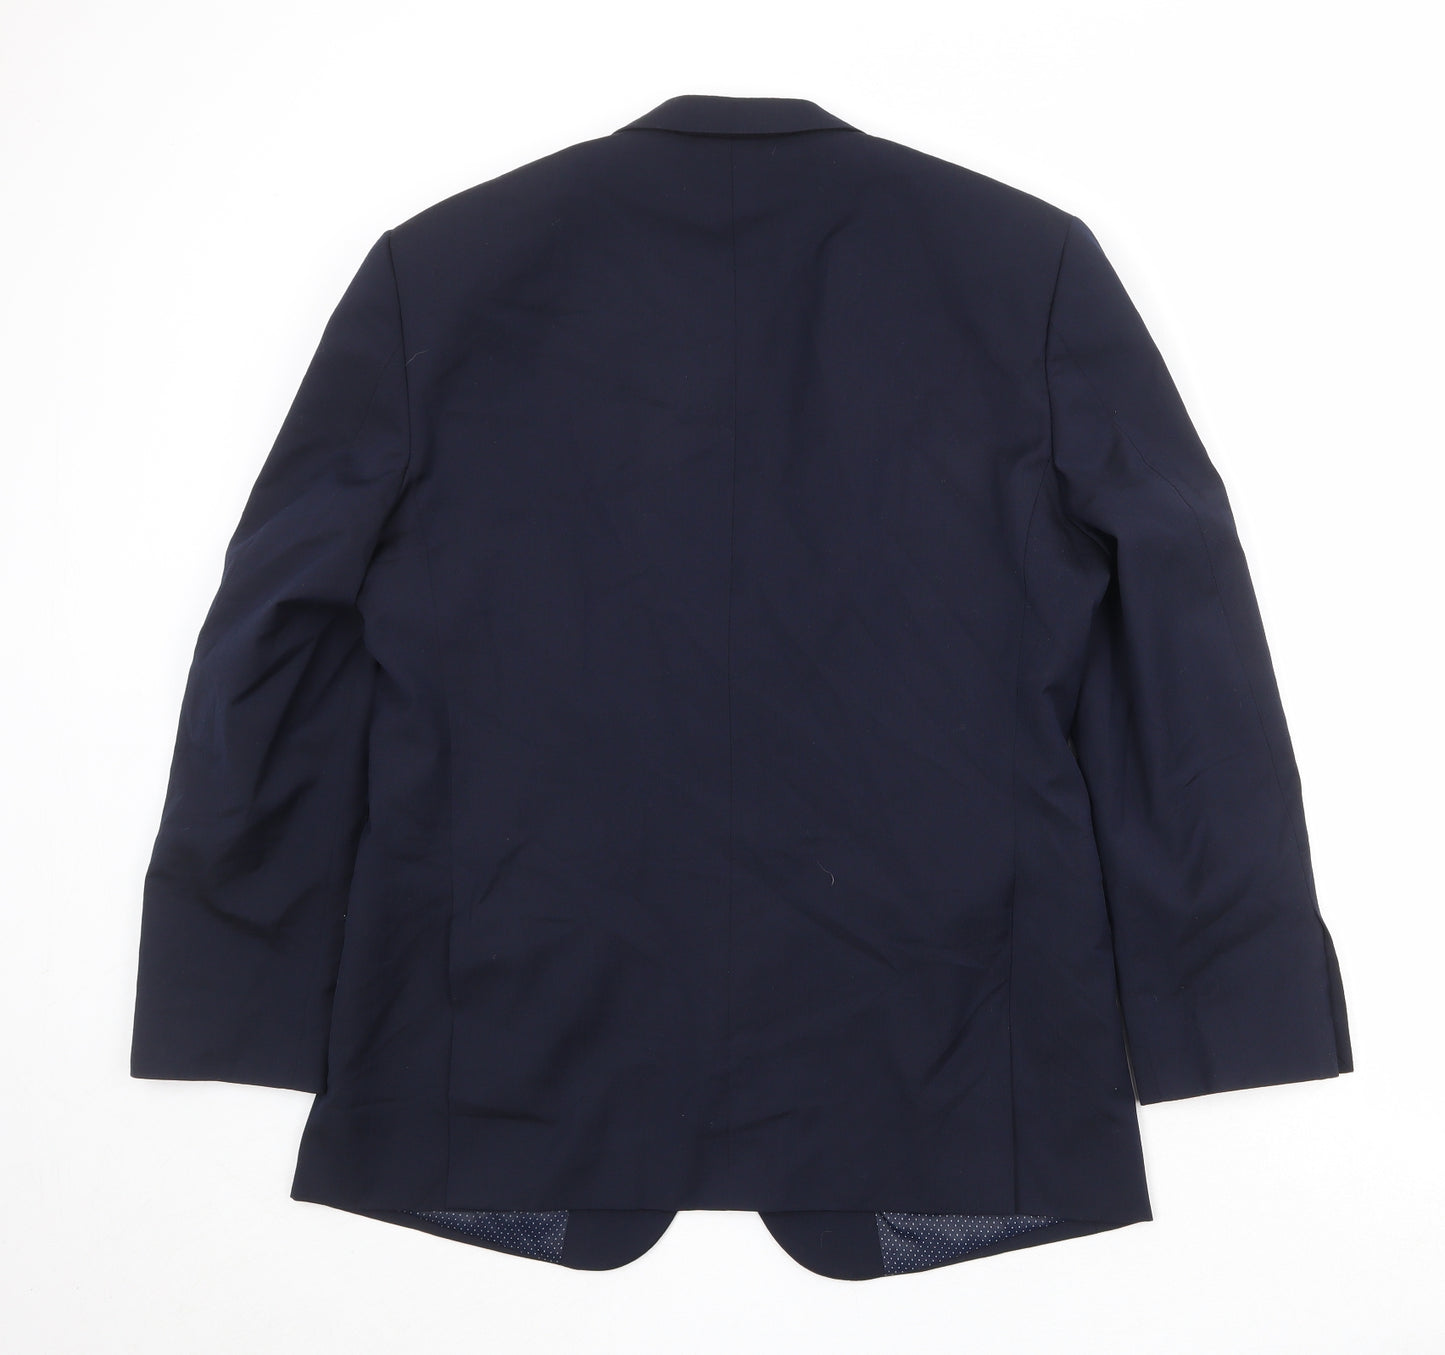 Skopes Mens Blue Polyester Jacket Suit Jacket Size 40 Regular